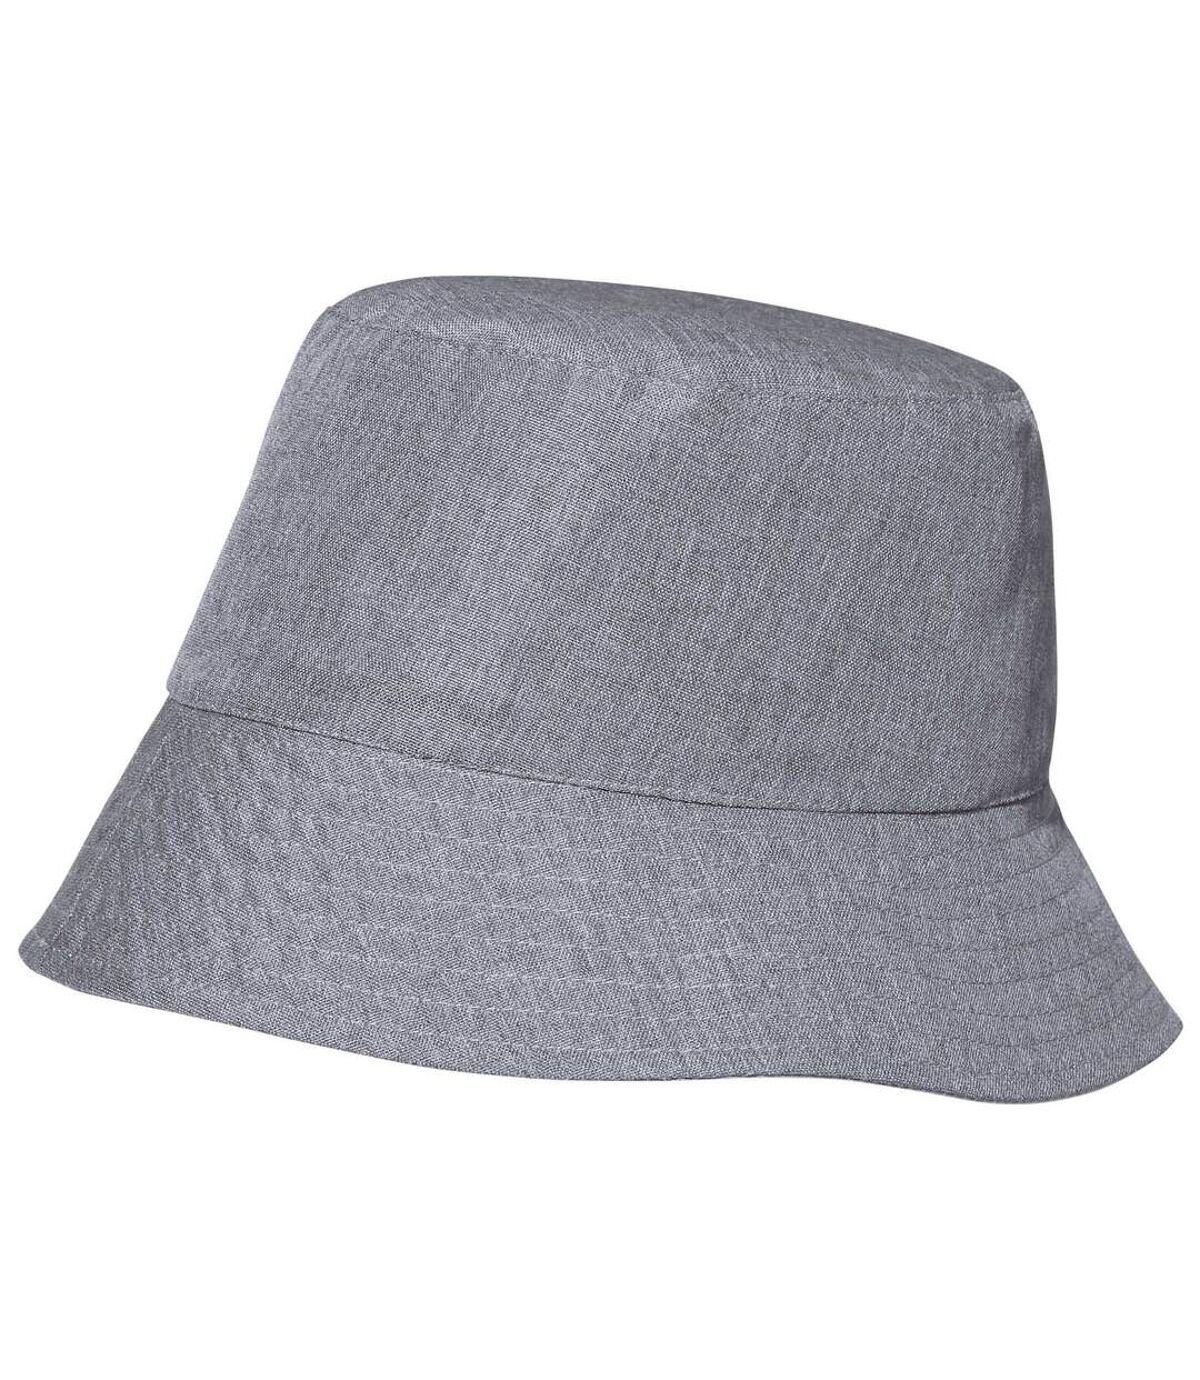 Reversible Bucket Hat - Beige Light Grey Atlas For Men